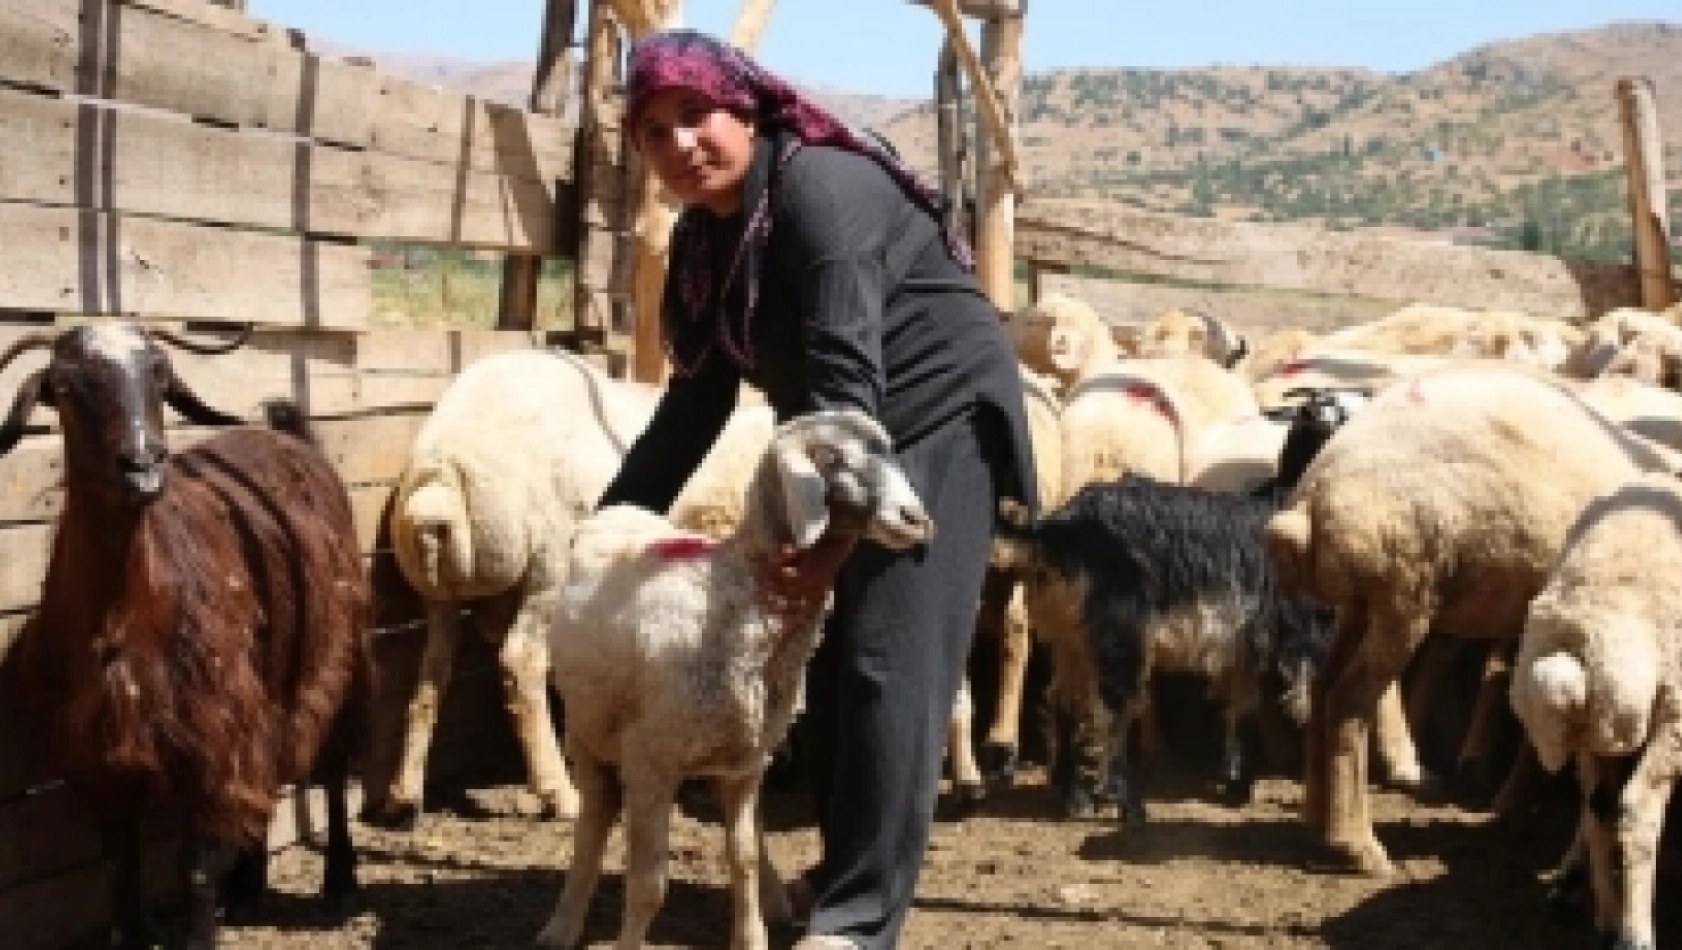 Depremde hayvanları telef olan kadın besici devlet desteğiyle ayağa kalktı